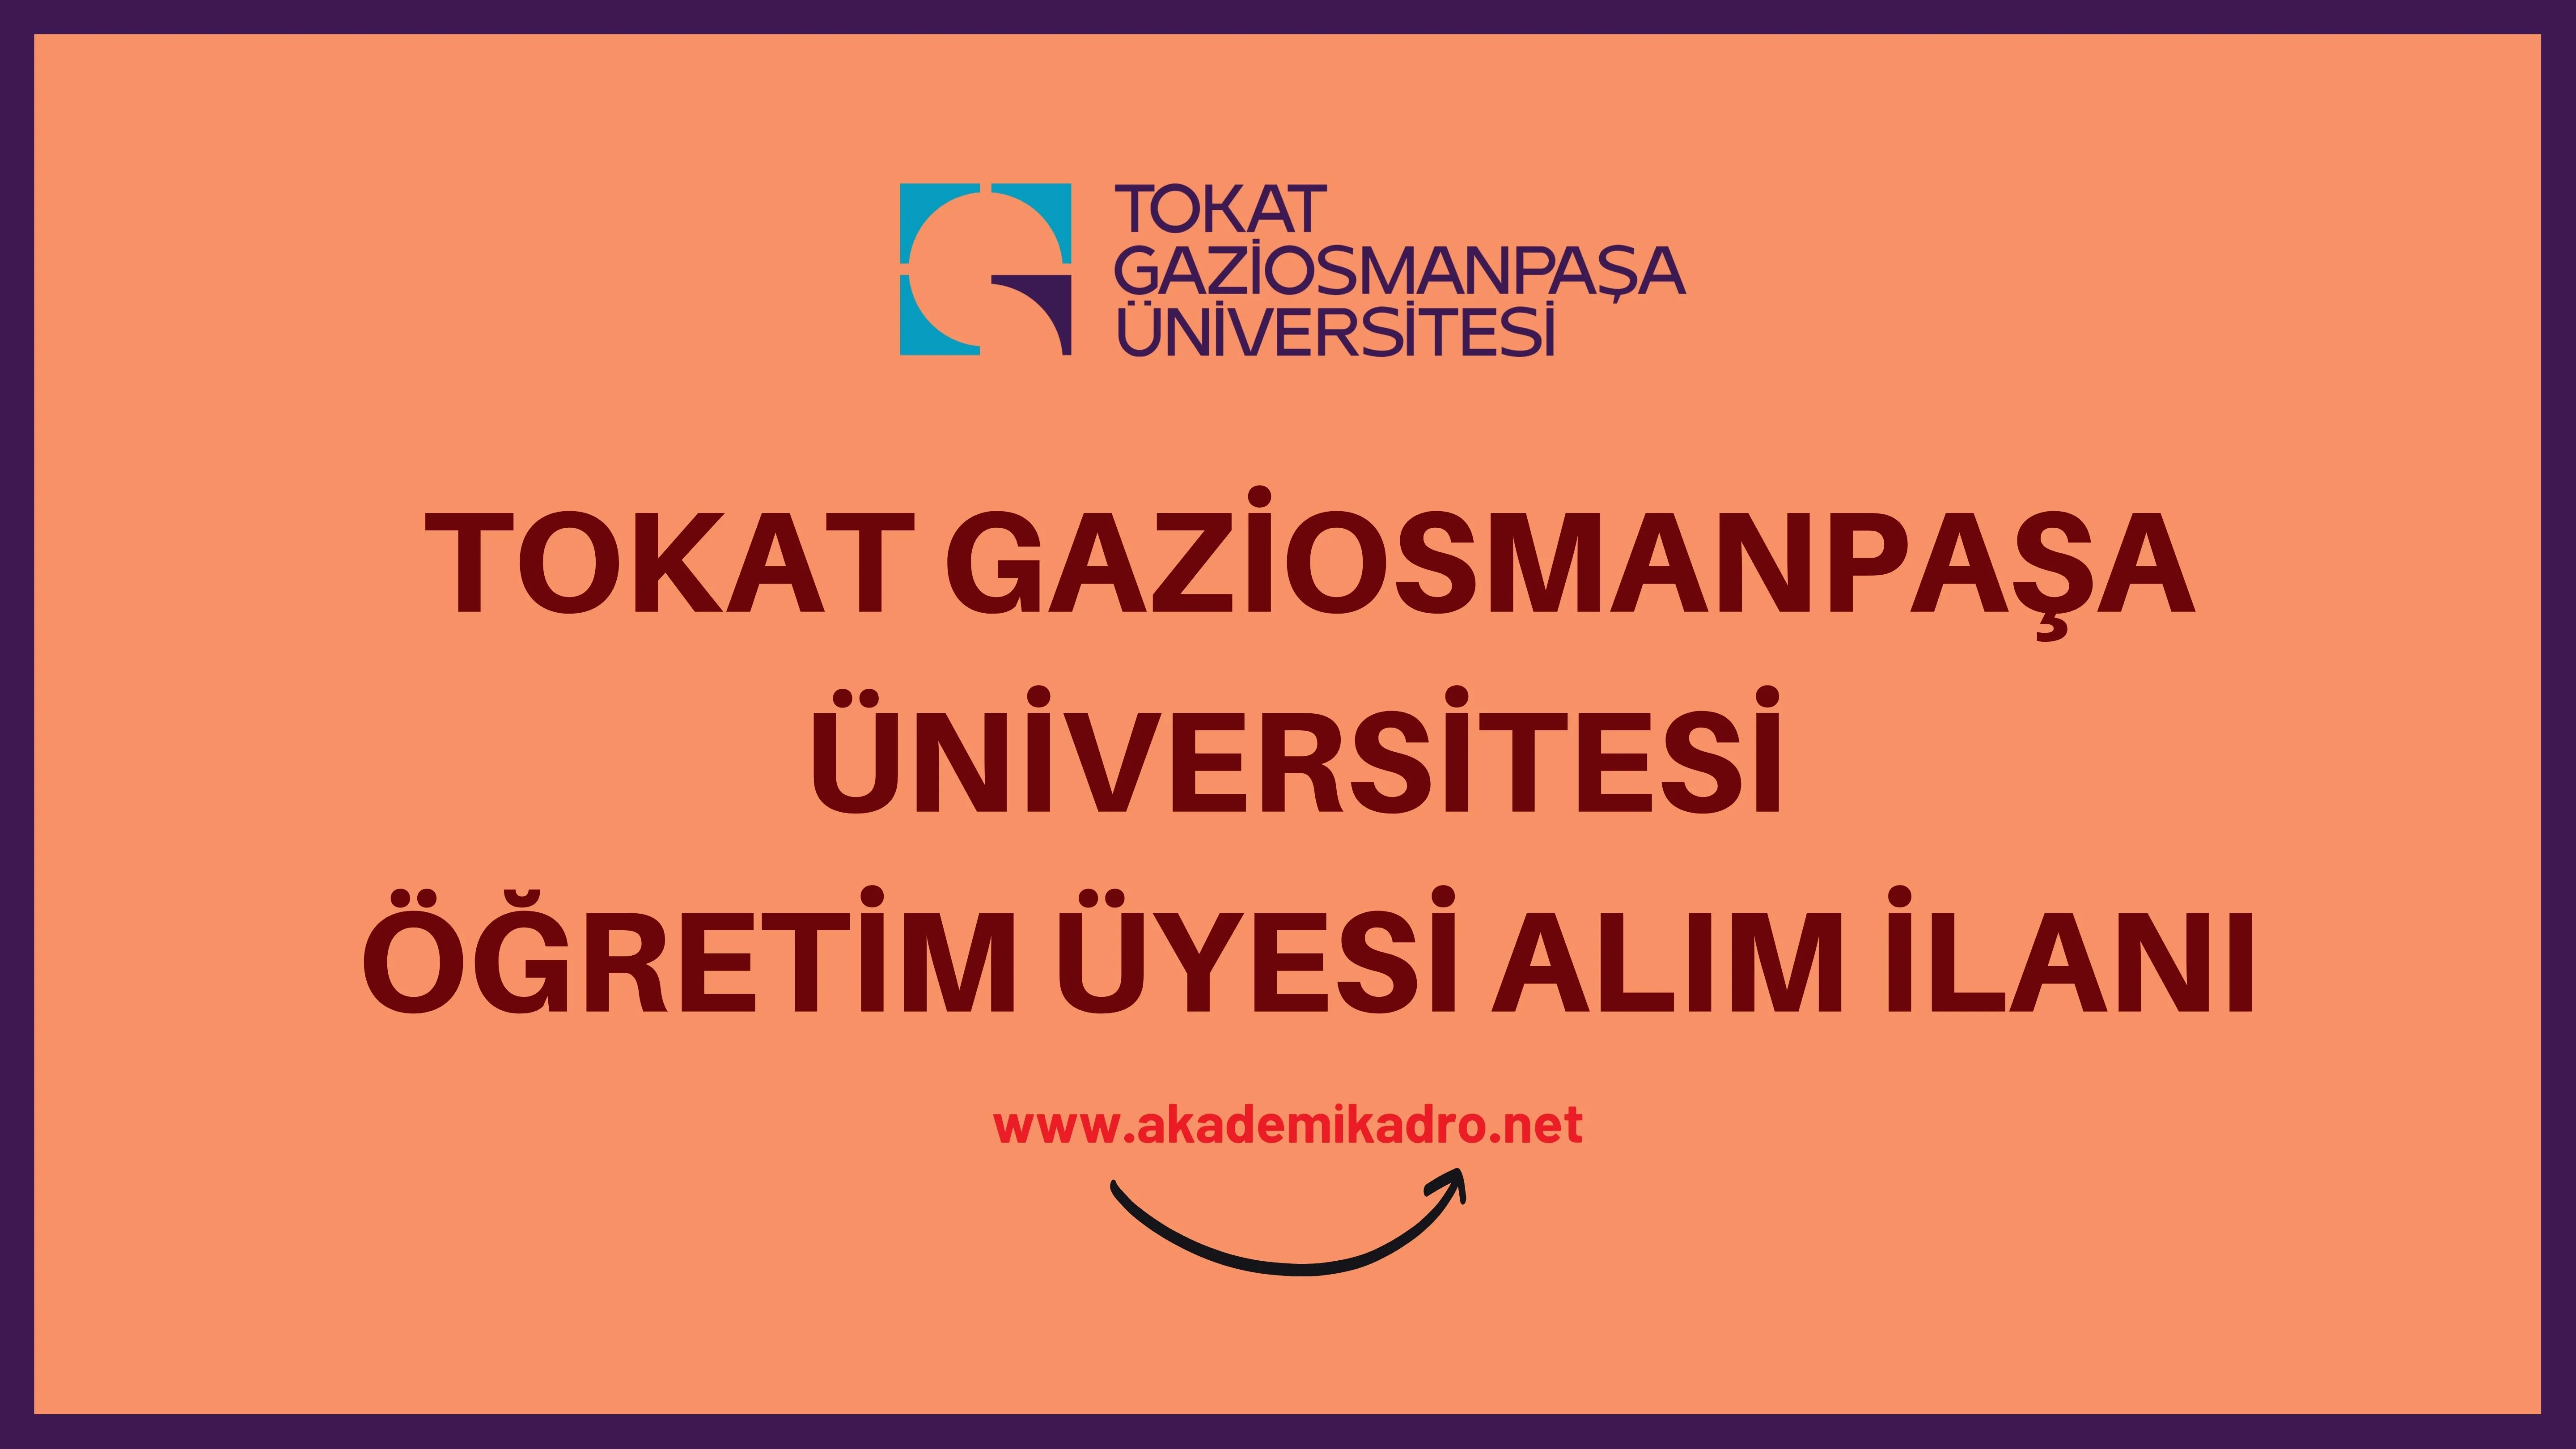 Tokat Gaziosmanpaşa Üniversitesi 35 akademik personel alacak.